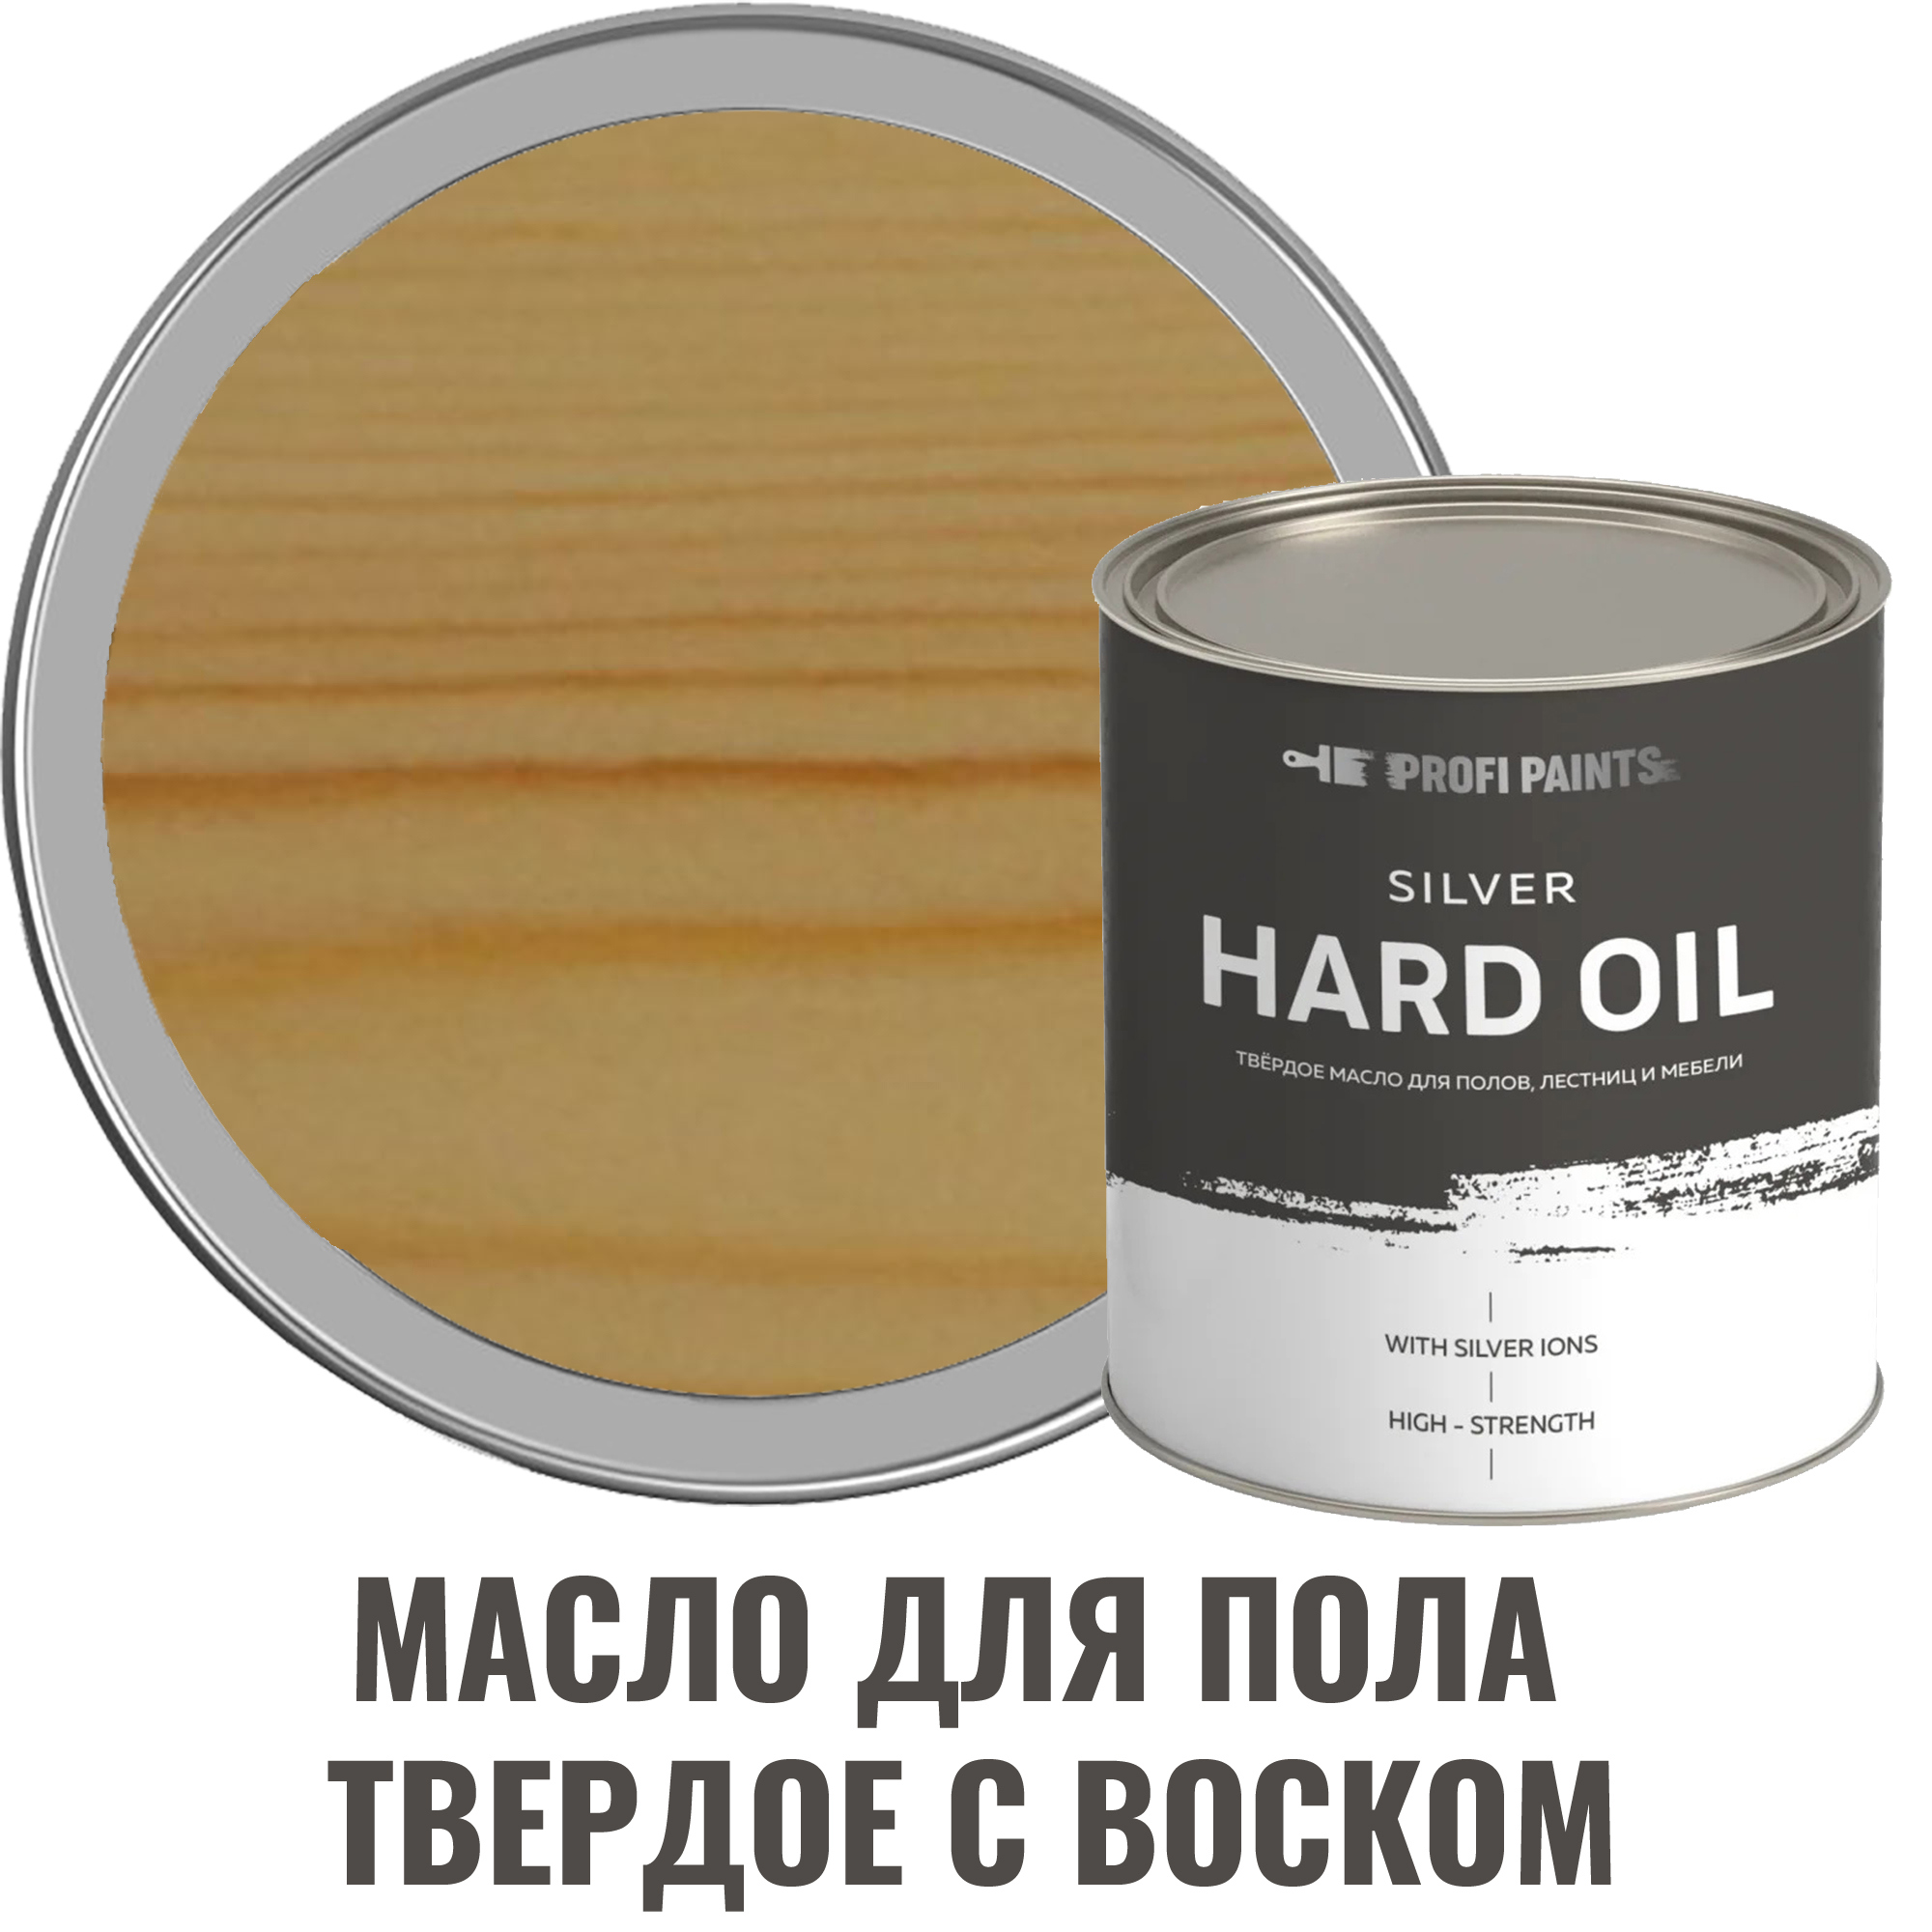 91095491 Масло для пола 10759_D Silver Hard Oil цвет прозрачный 2.7 л STLM-0481847 PROFIPAINTS